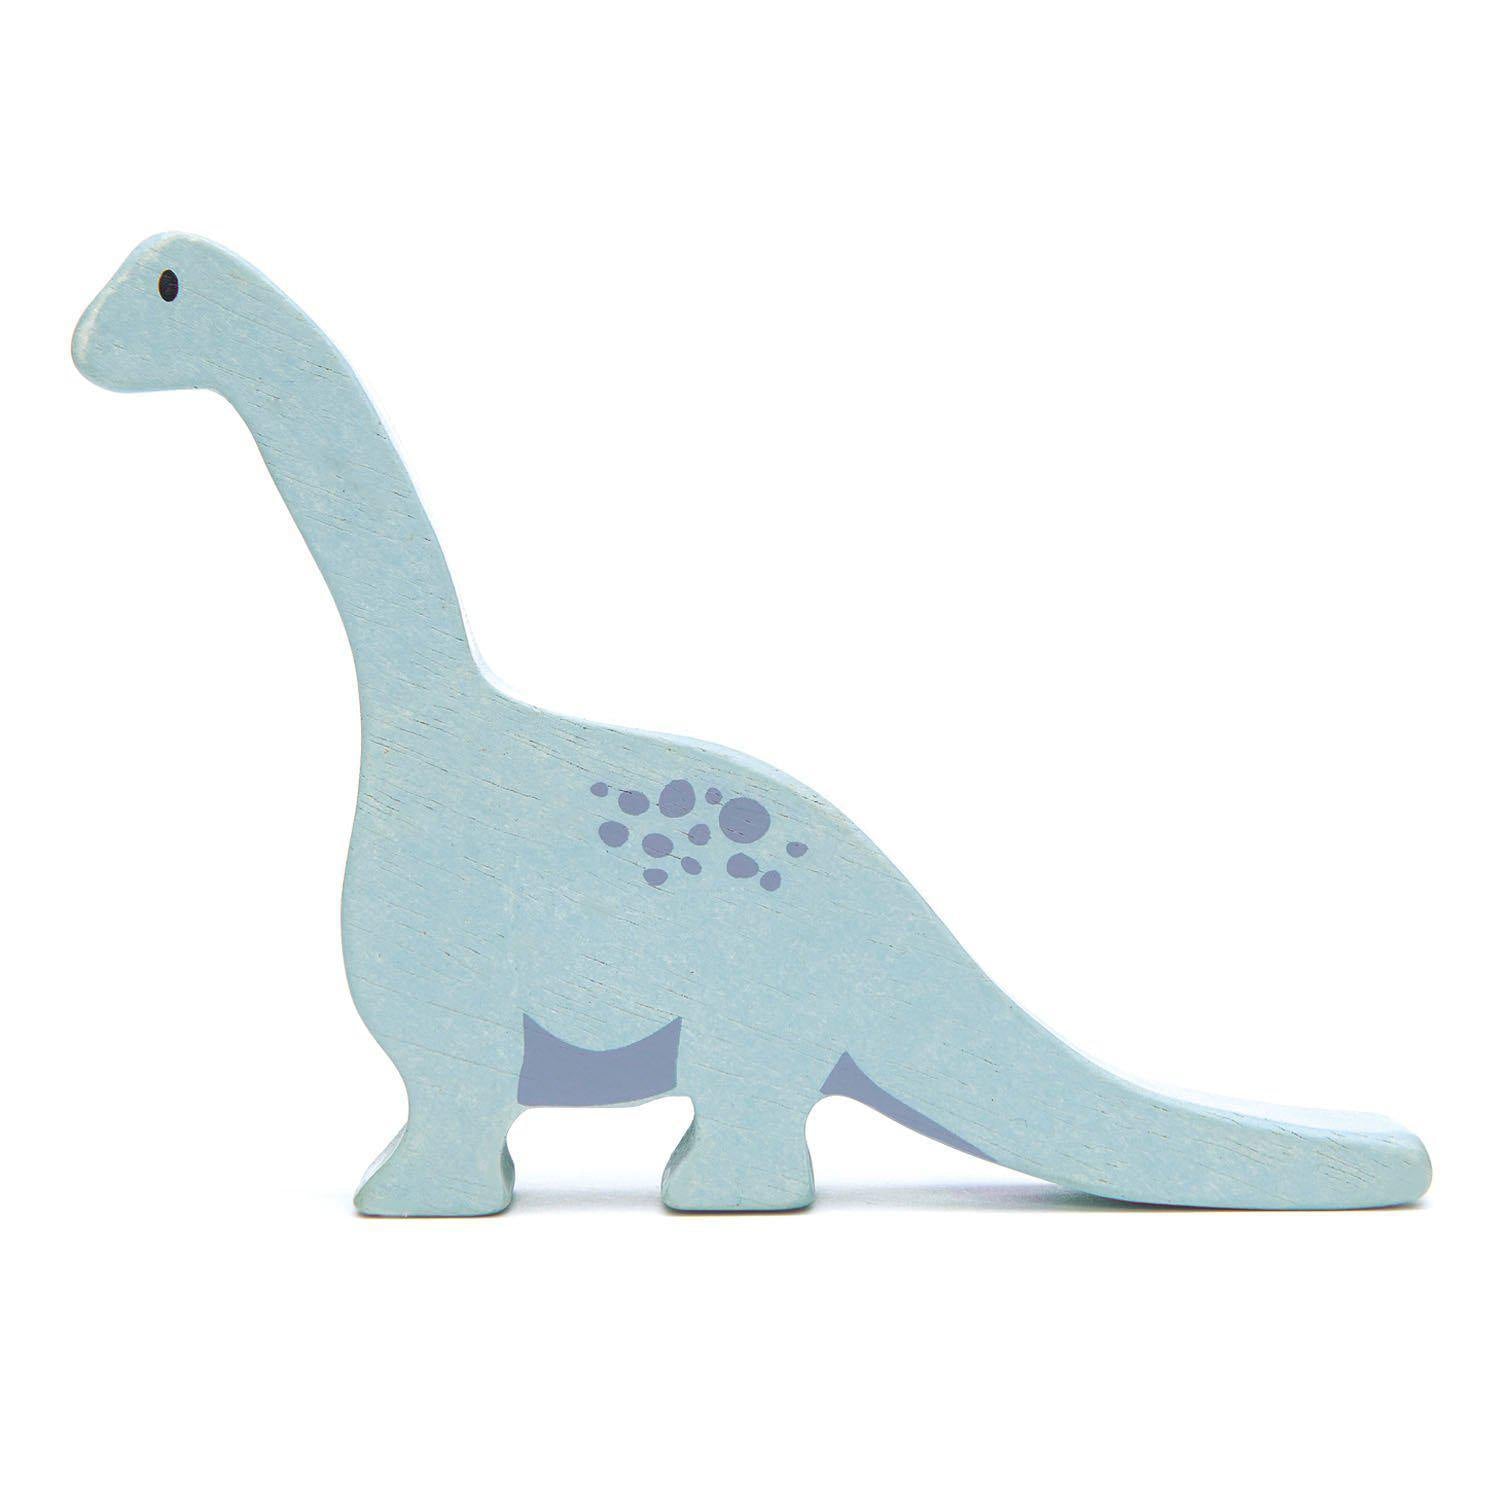 Brontosaurus, prémium minőségű fából - Brontosaurus - Tender Leaf Toys-Tender Leaf Toys-1-Játszma.ro - A maradandó élmények boltja